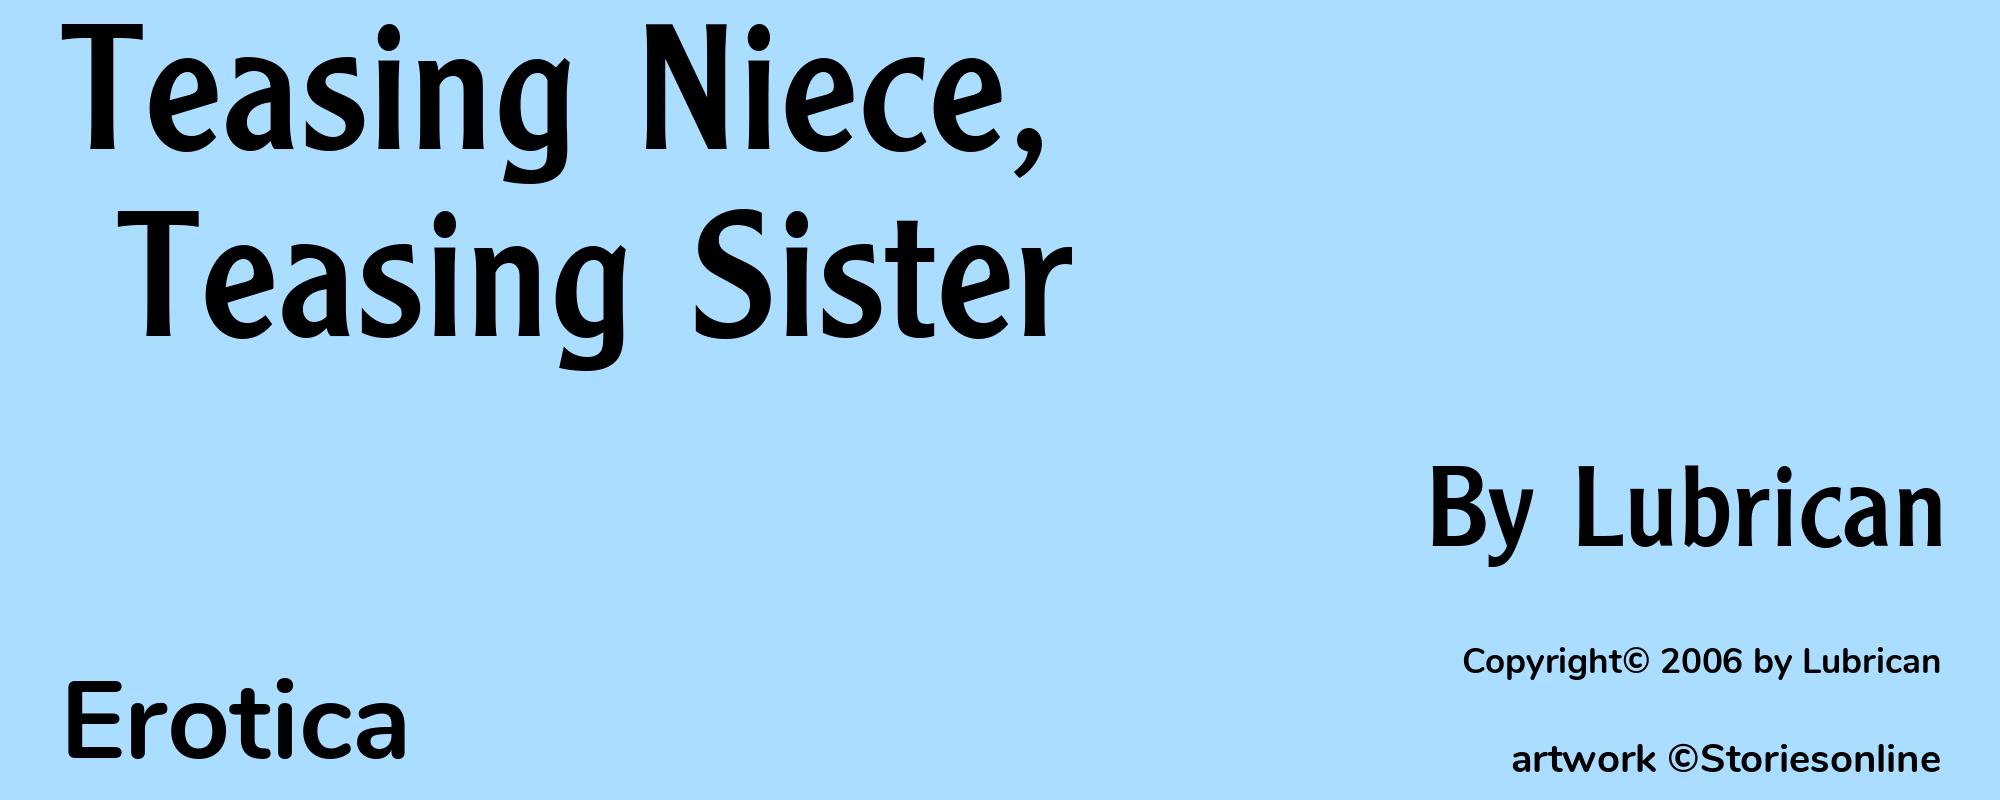 Teasing Niece, Teasing Sister - Cover